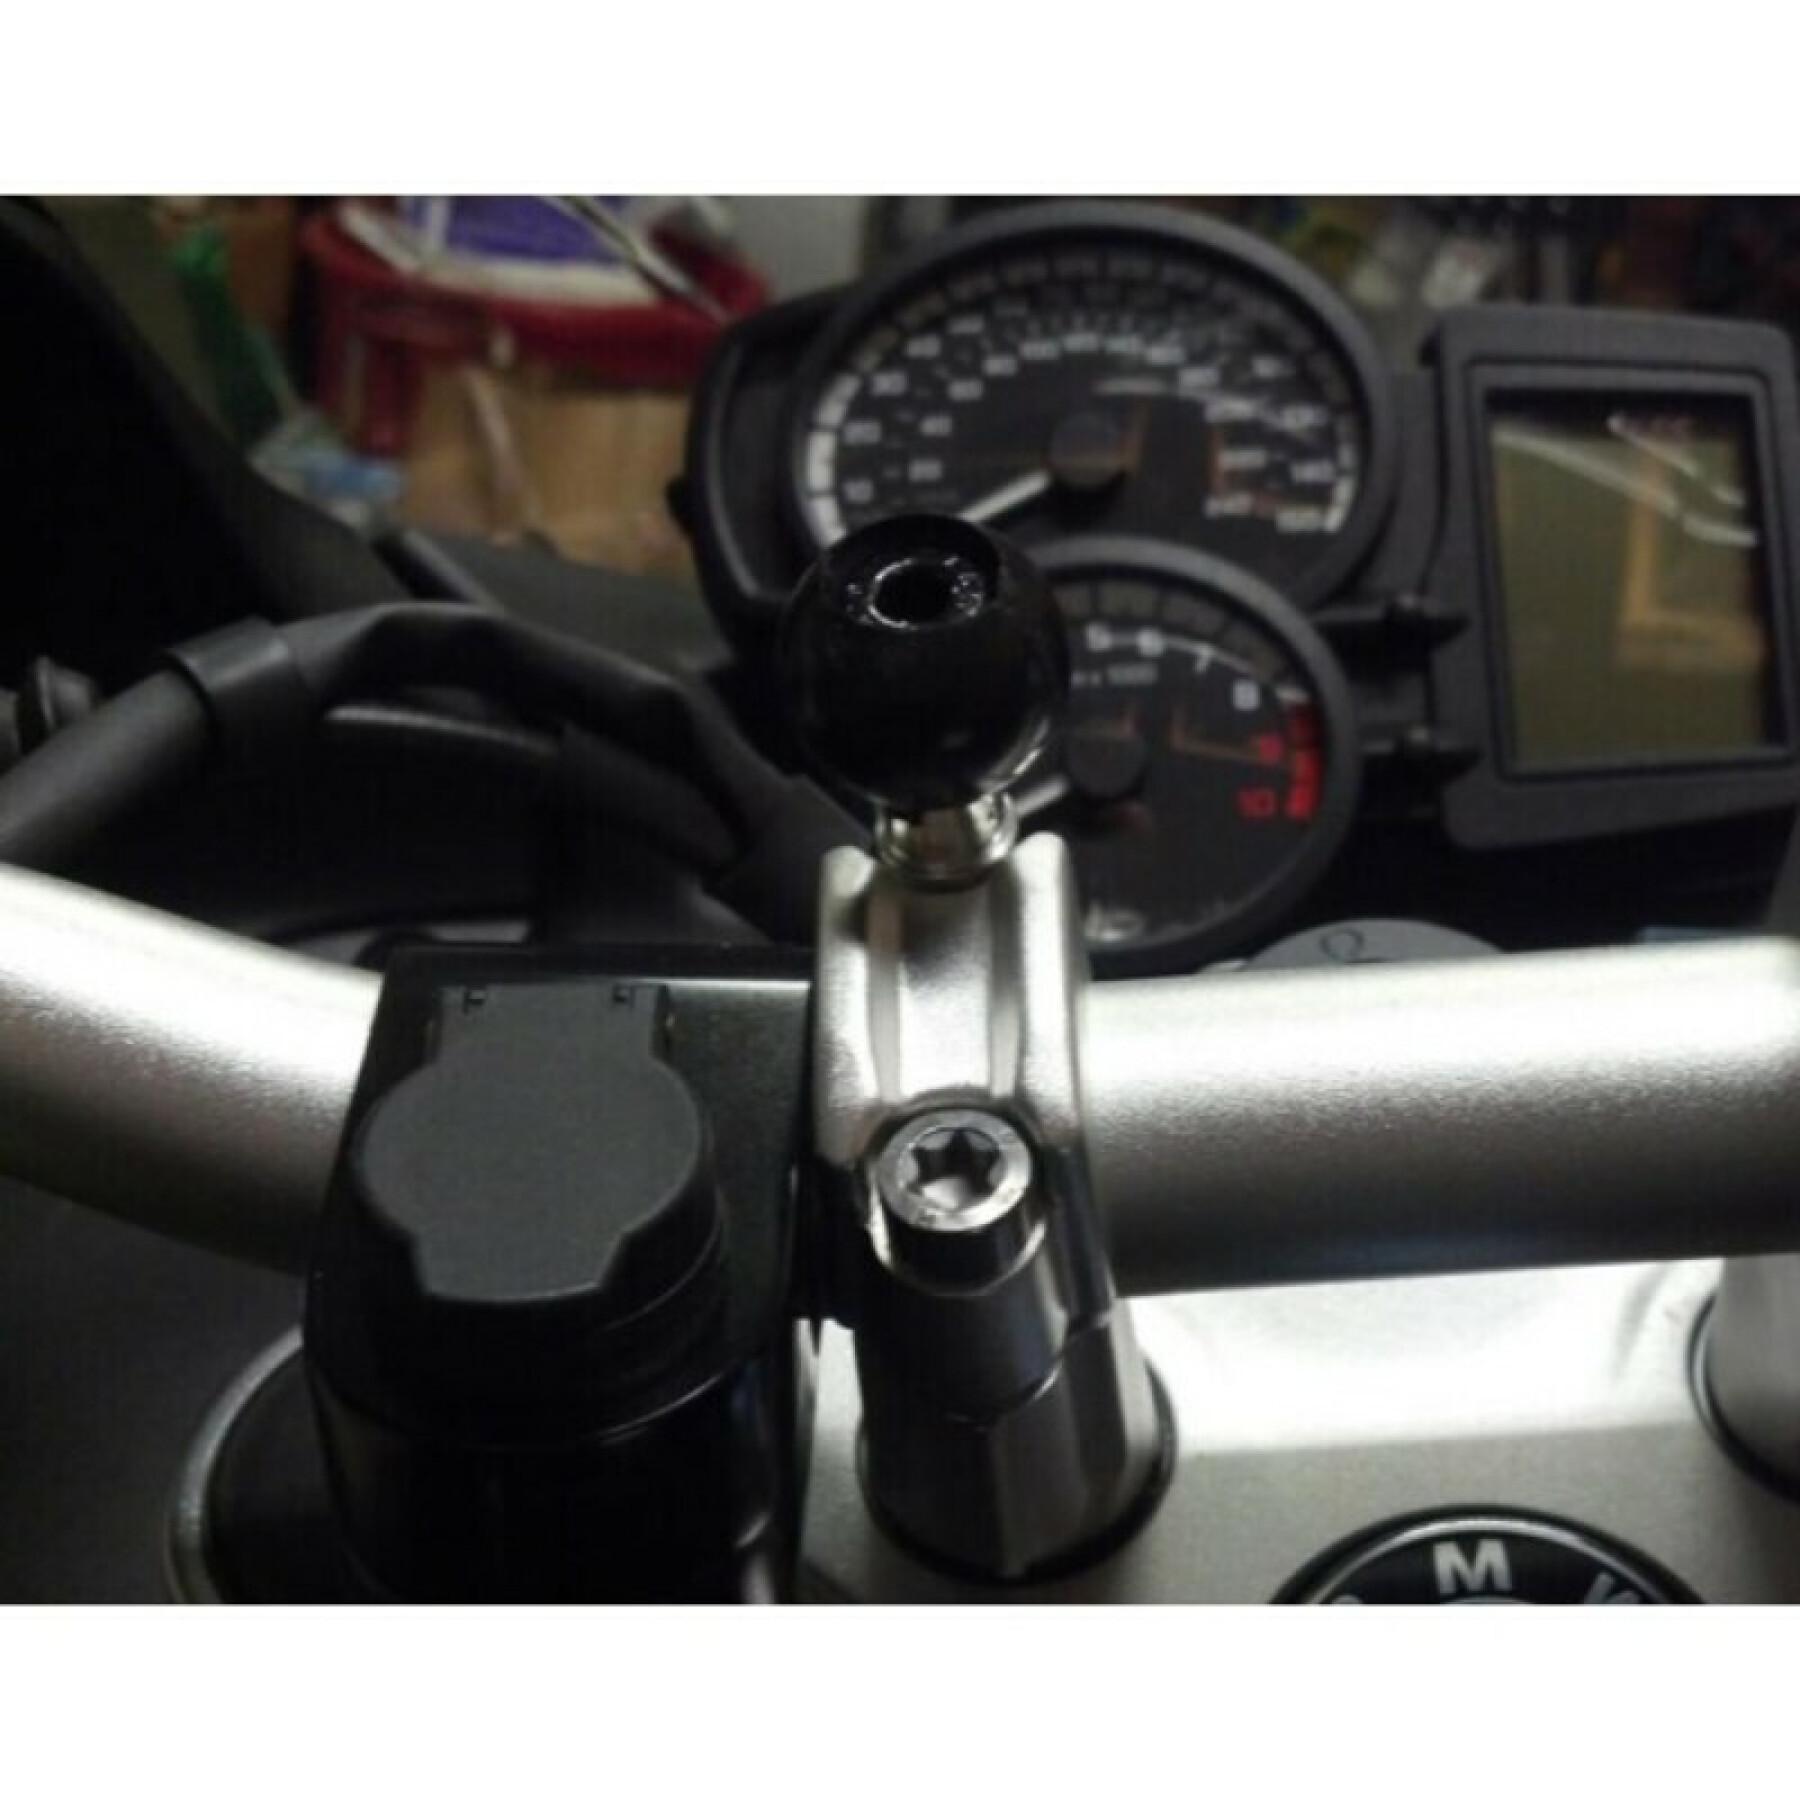 Uchwyt na smartfona do podstawy motocykla, mocowanie do osłony spustu za pomocą śrub kulowych b RAM Mounts